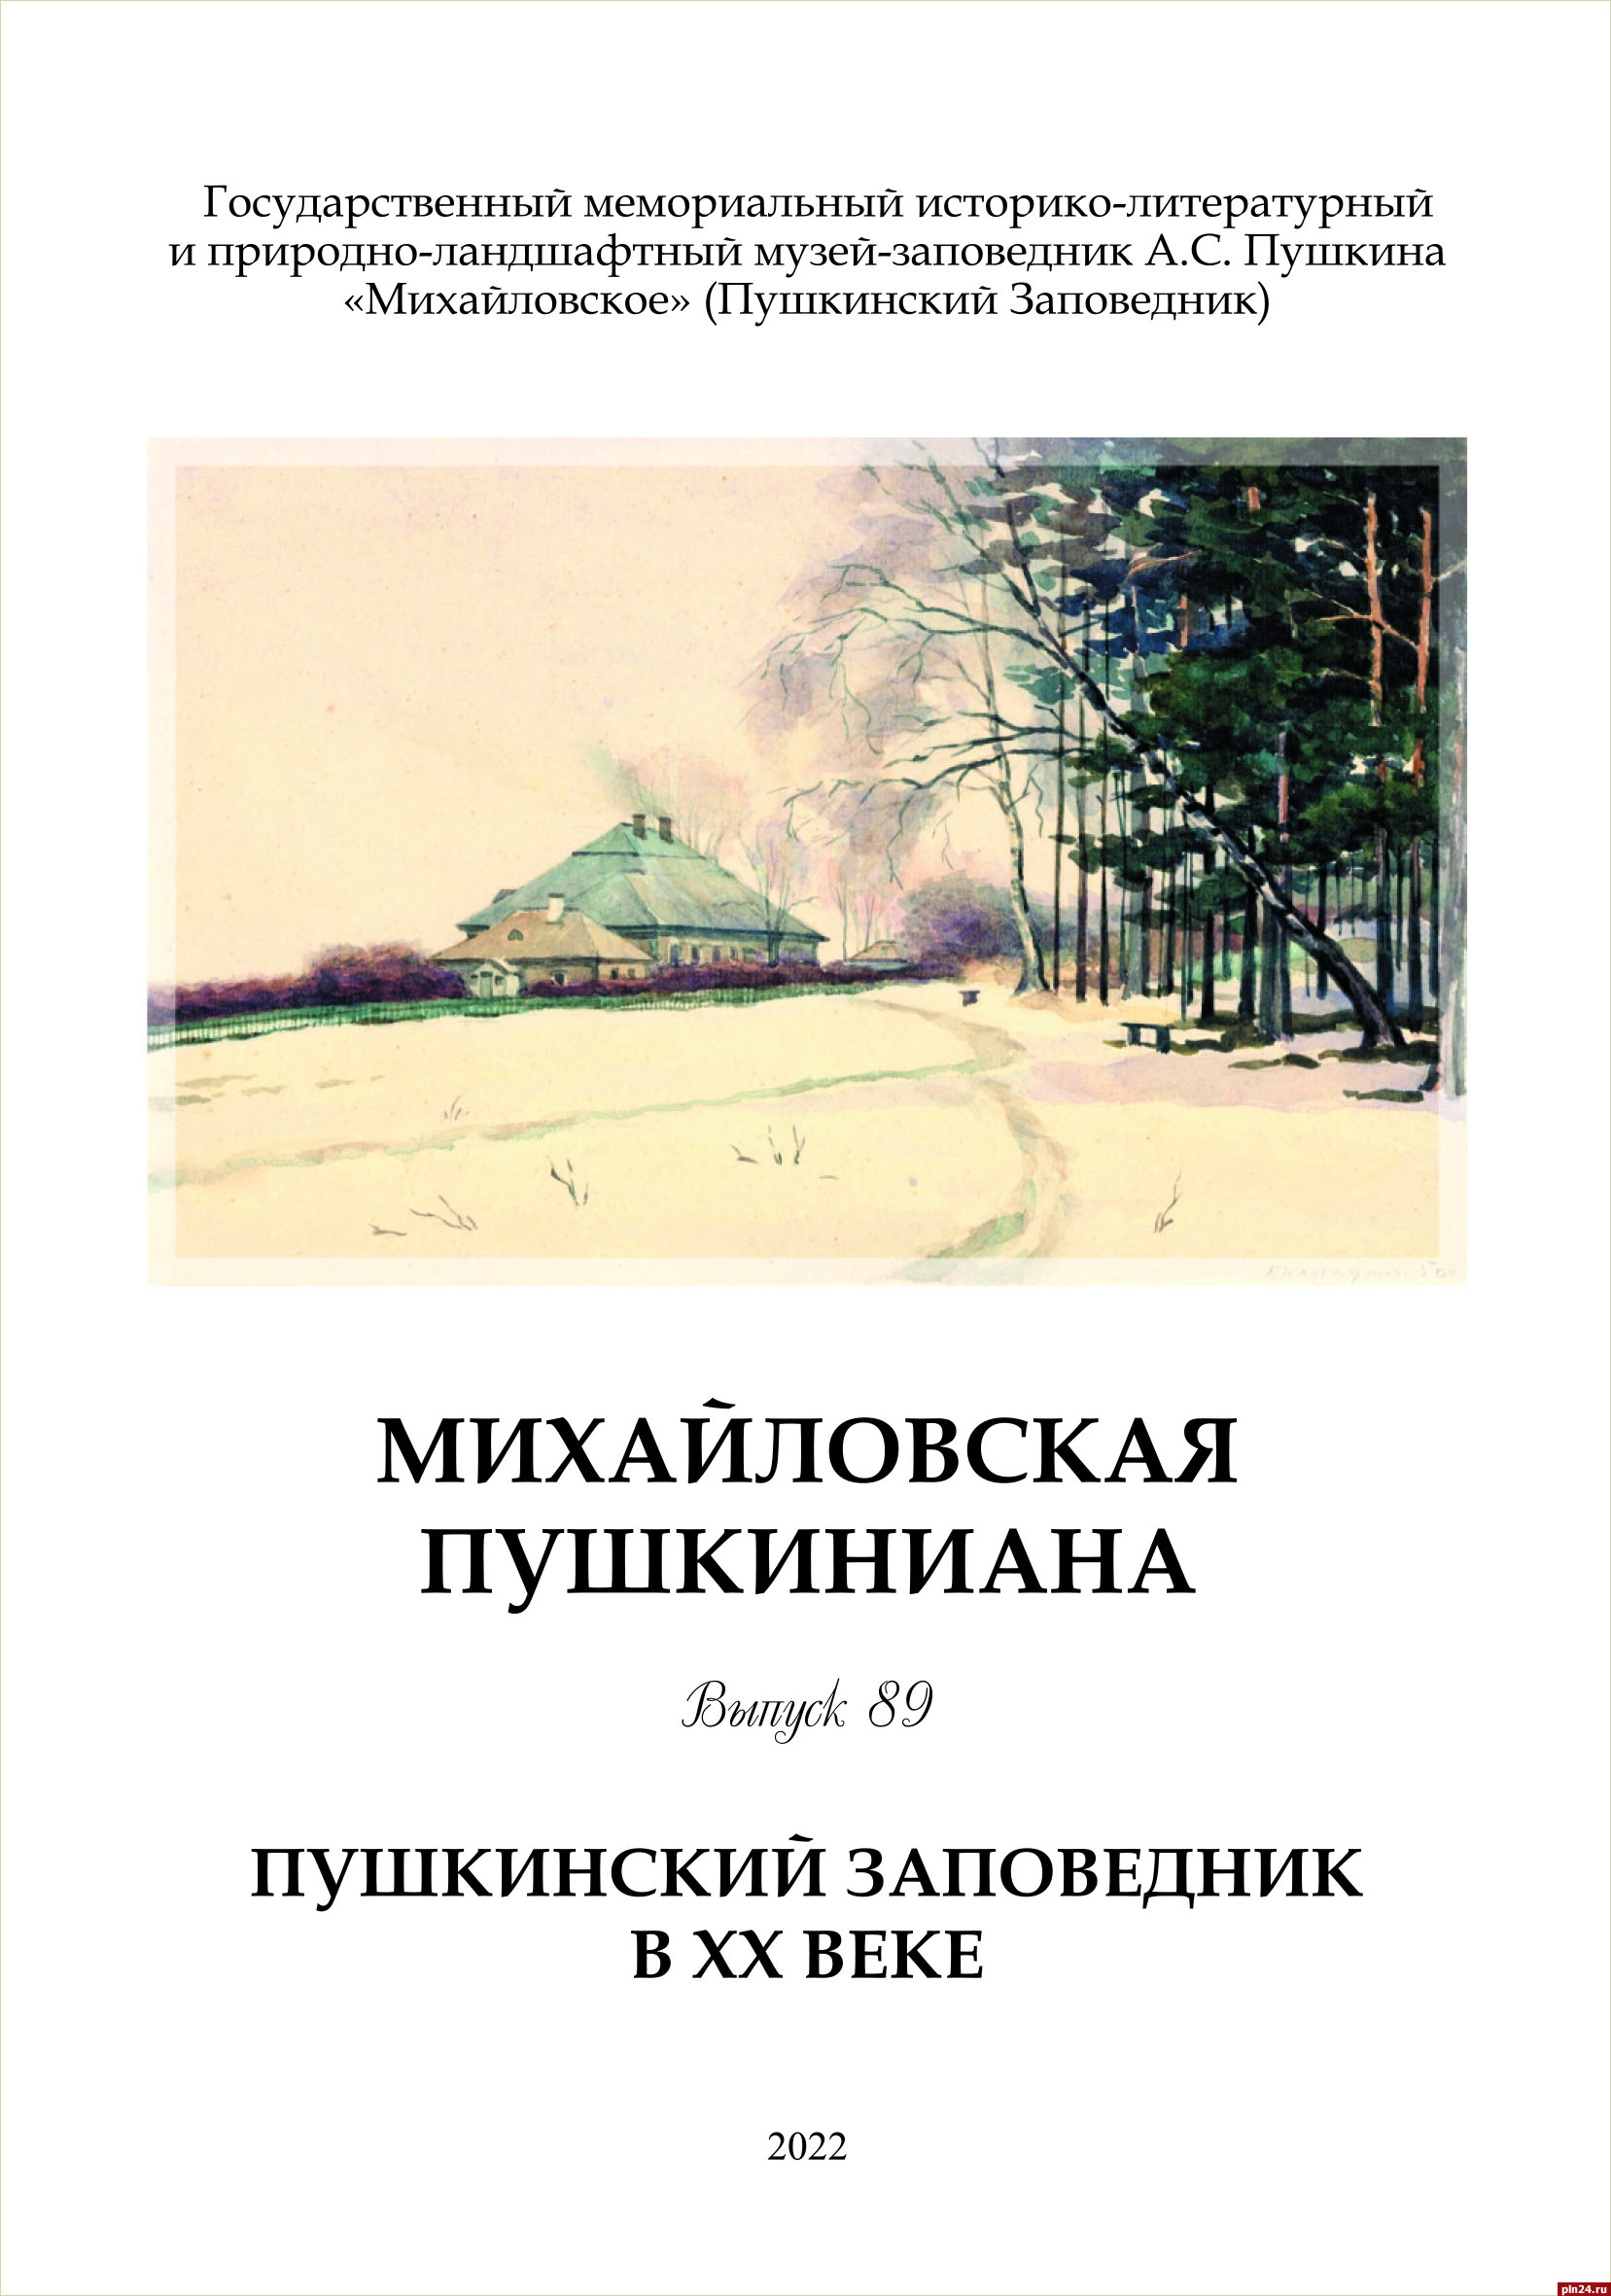 ХХ век стал главным «действующим лицом» нового издания Пушкинского заповедника